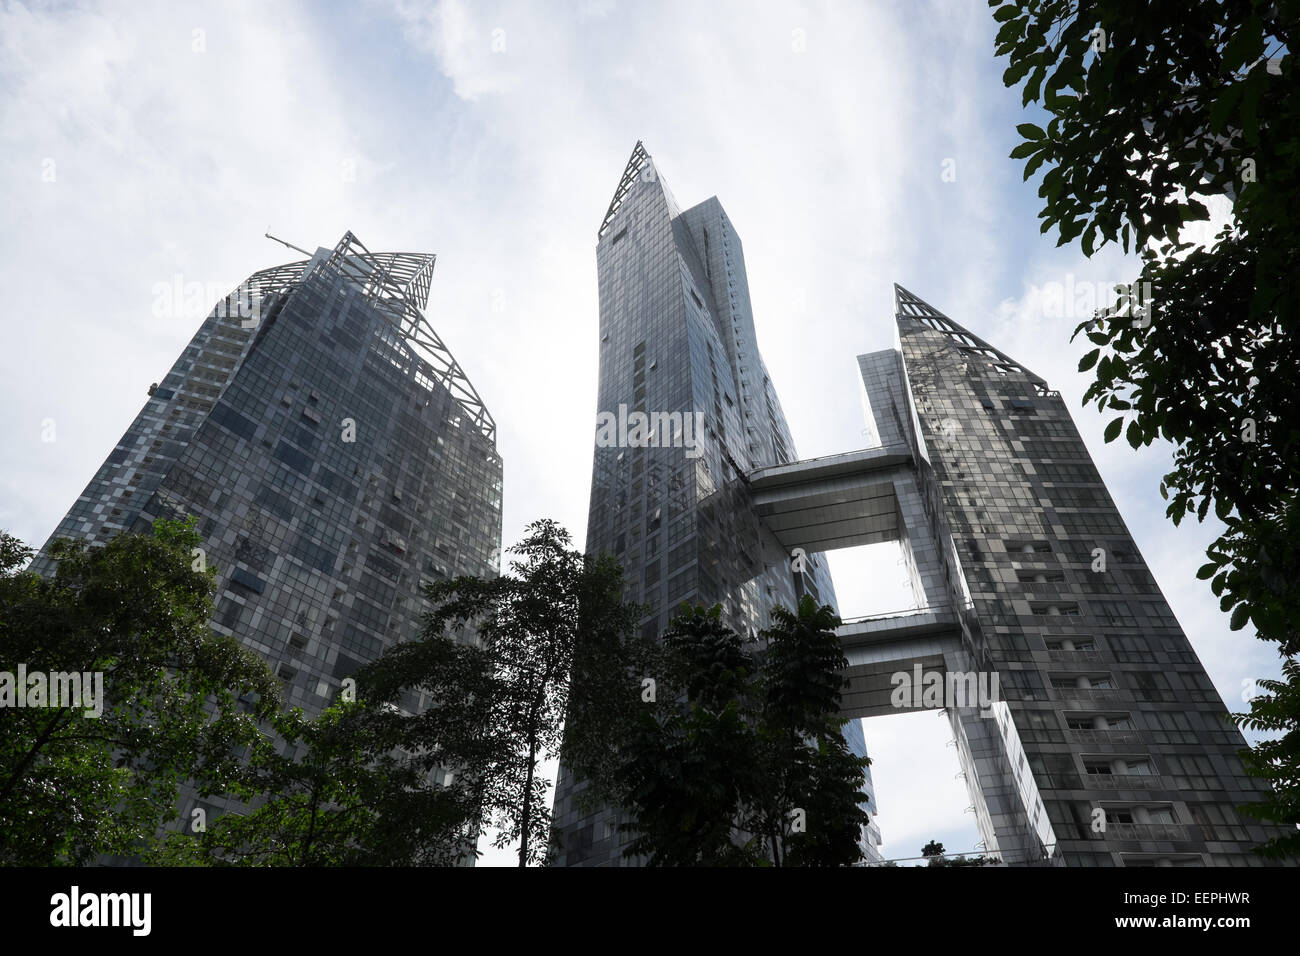 Réflexions à Keppel Bay, par l'architecte Daniel Libeskind. Singapour. Banque D'Images